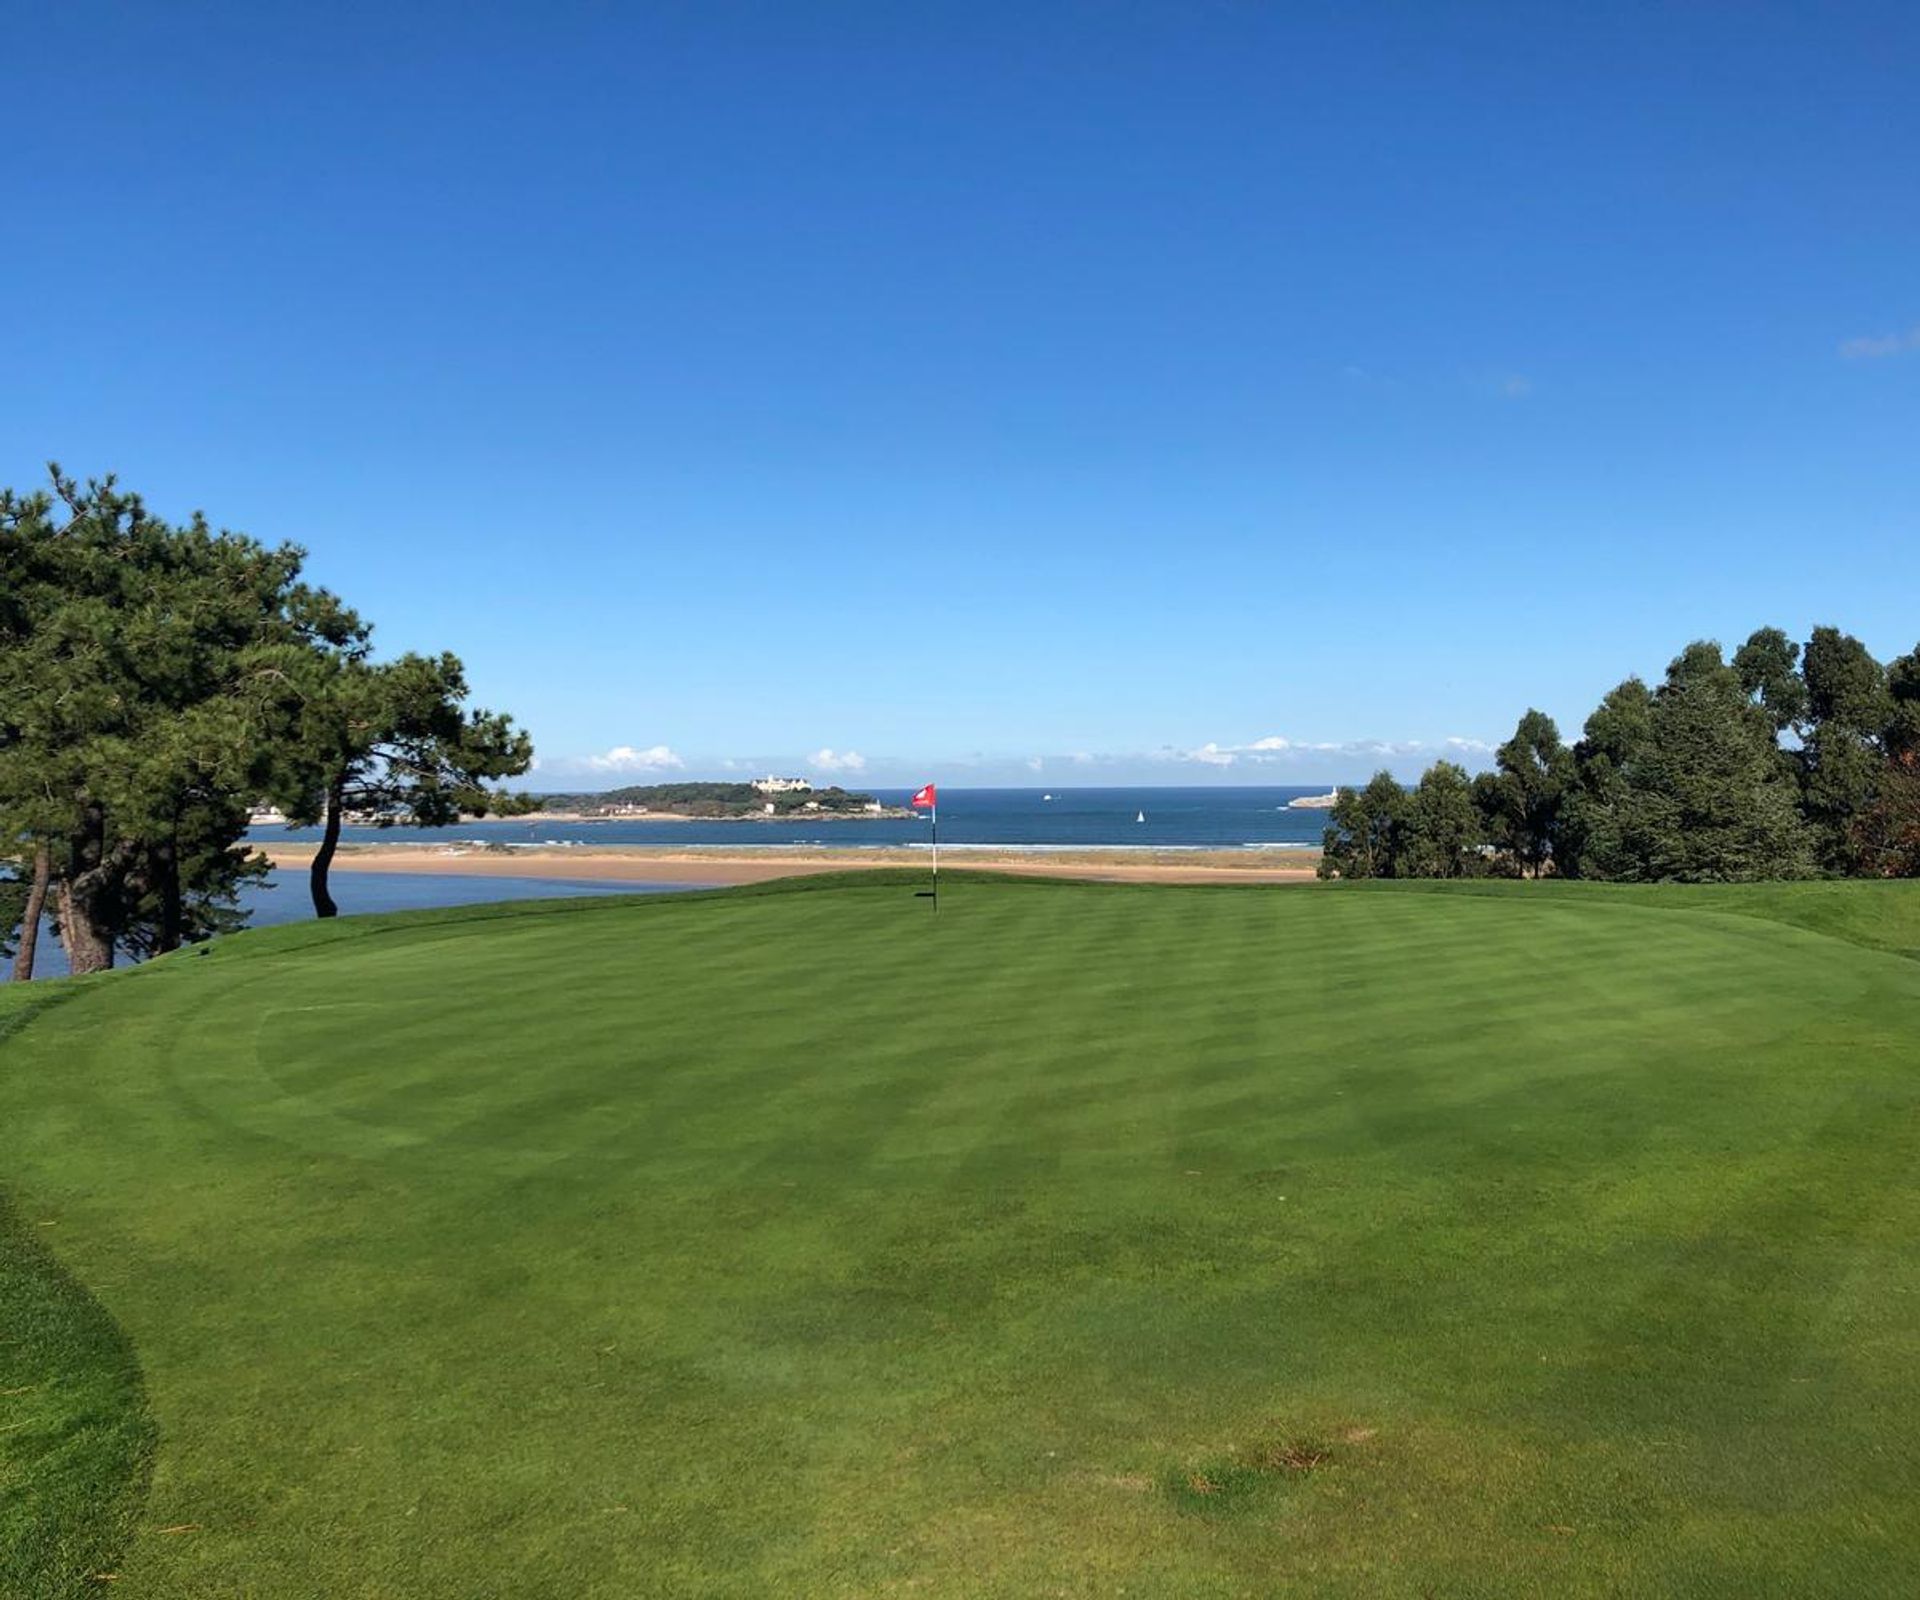 Beautiful views and greens at Real Golf de Pedreña